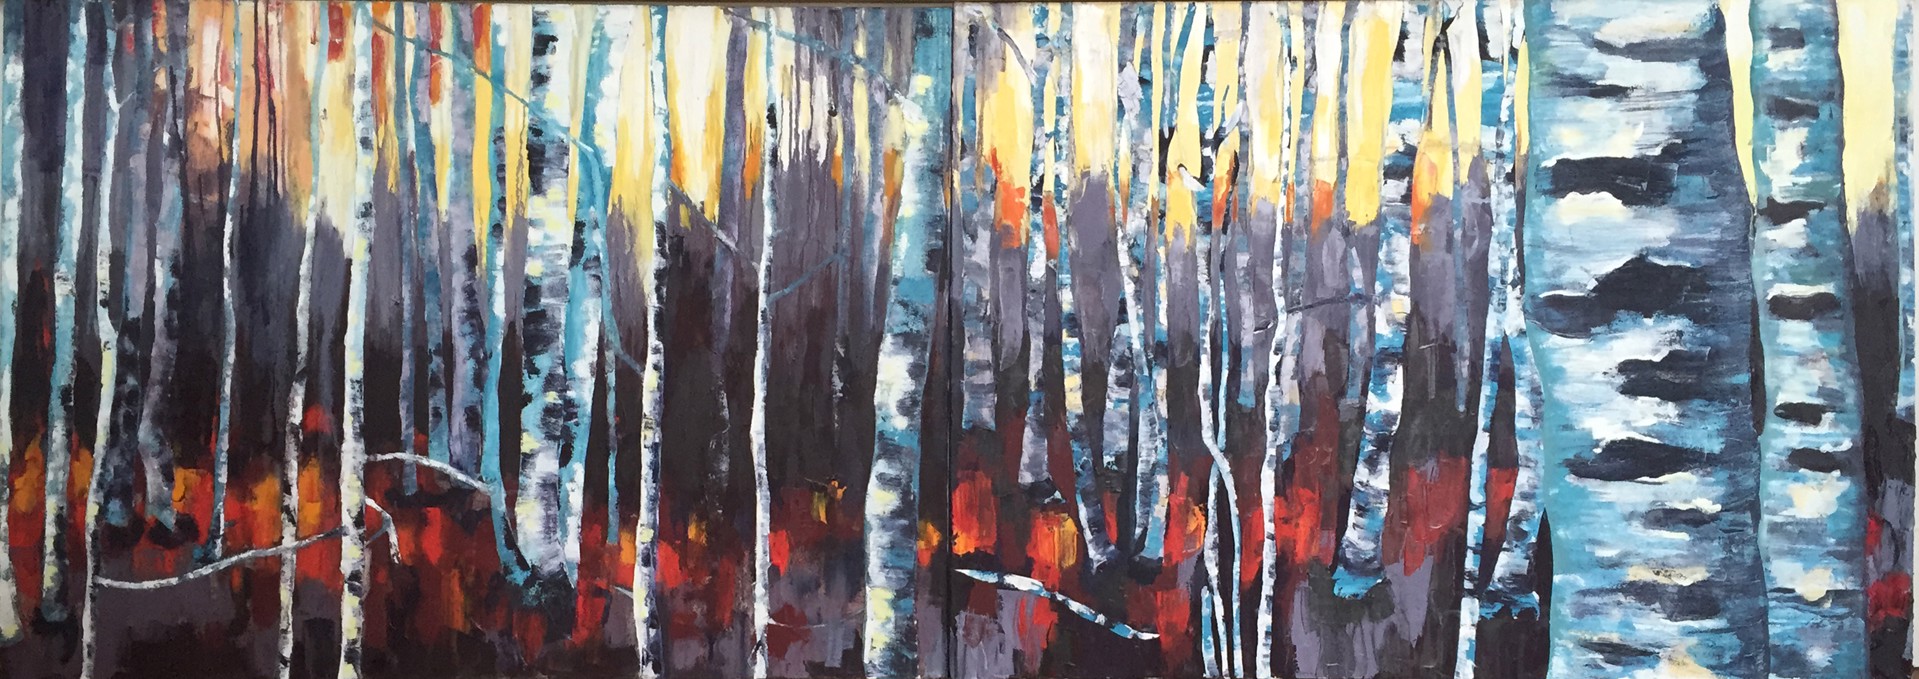 Birches by Lizzie Wortham